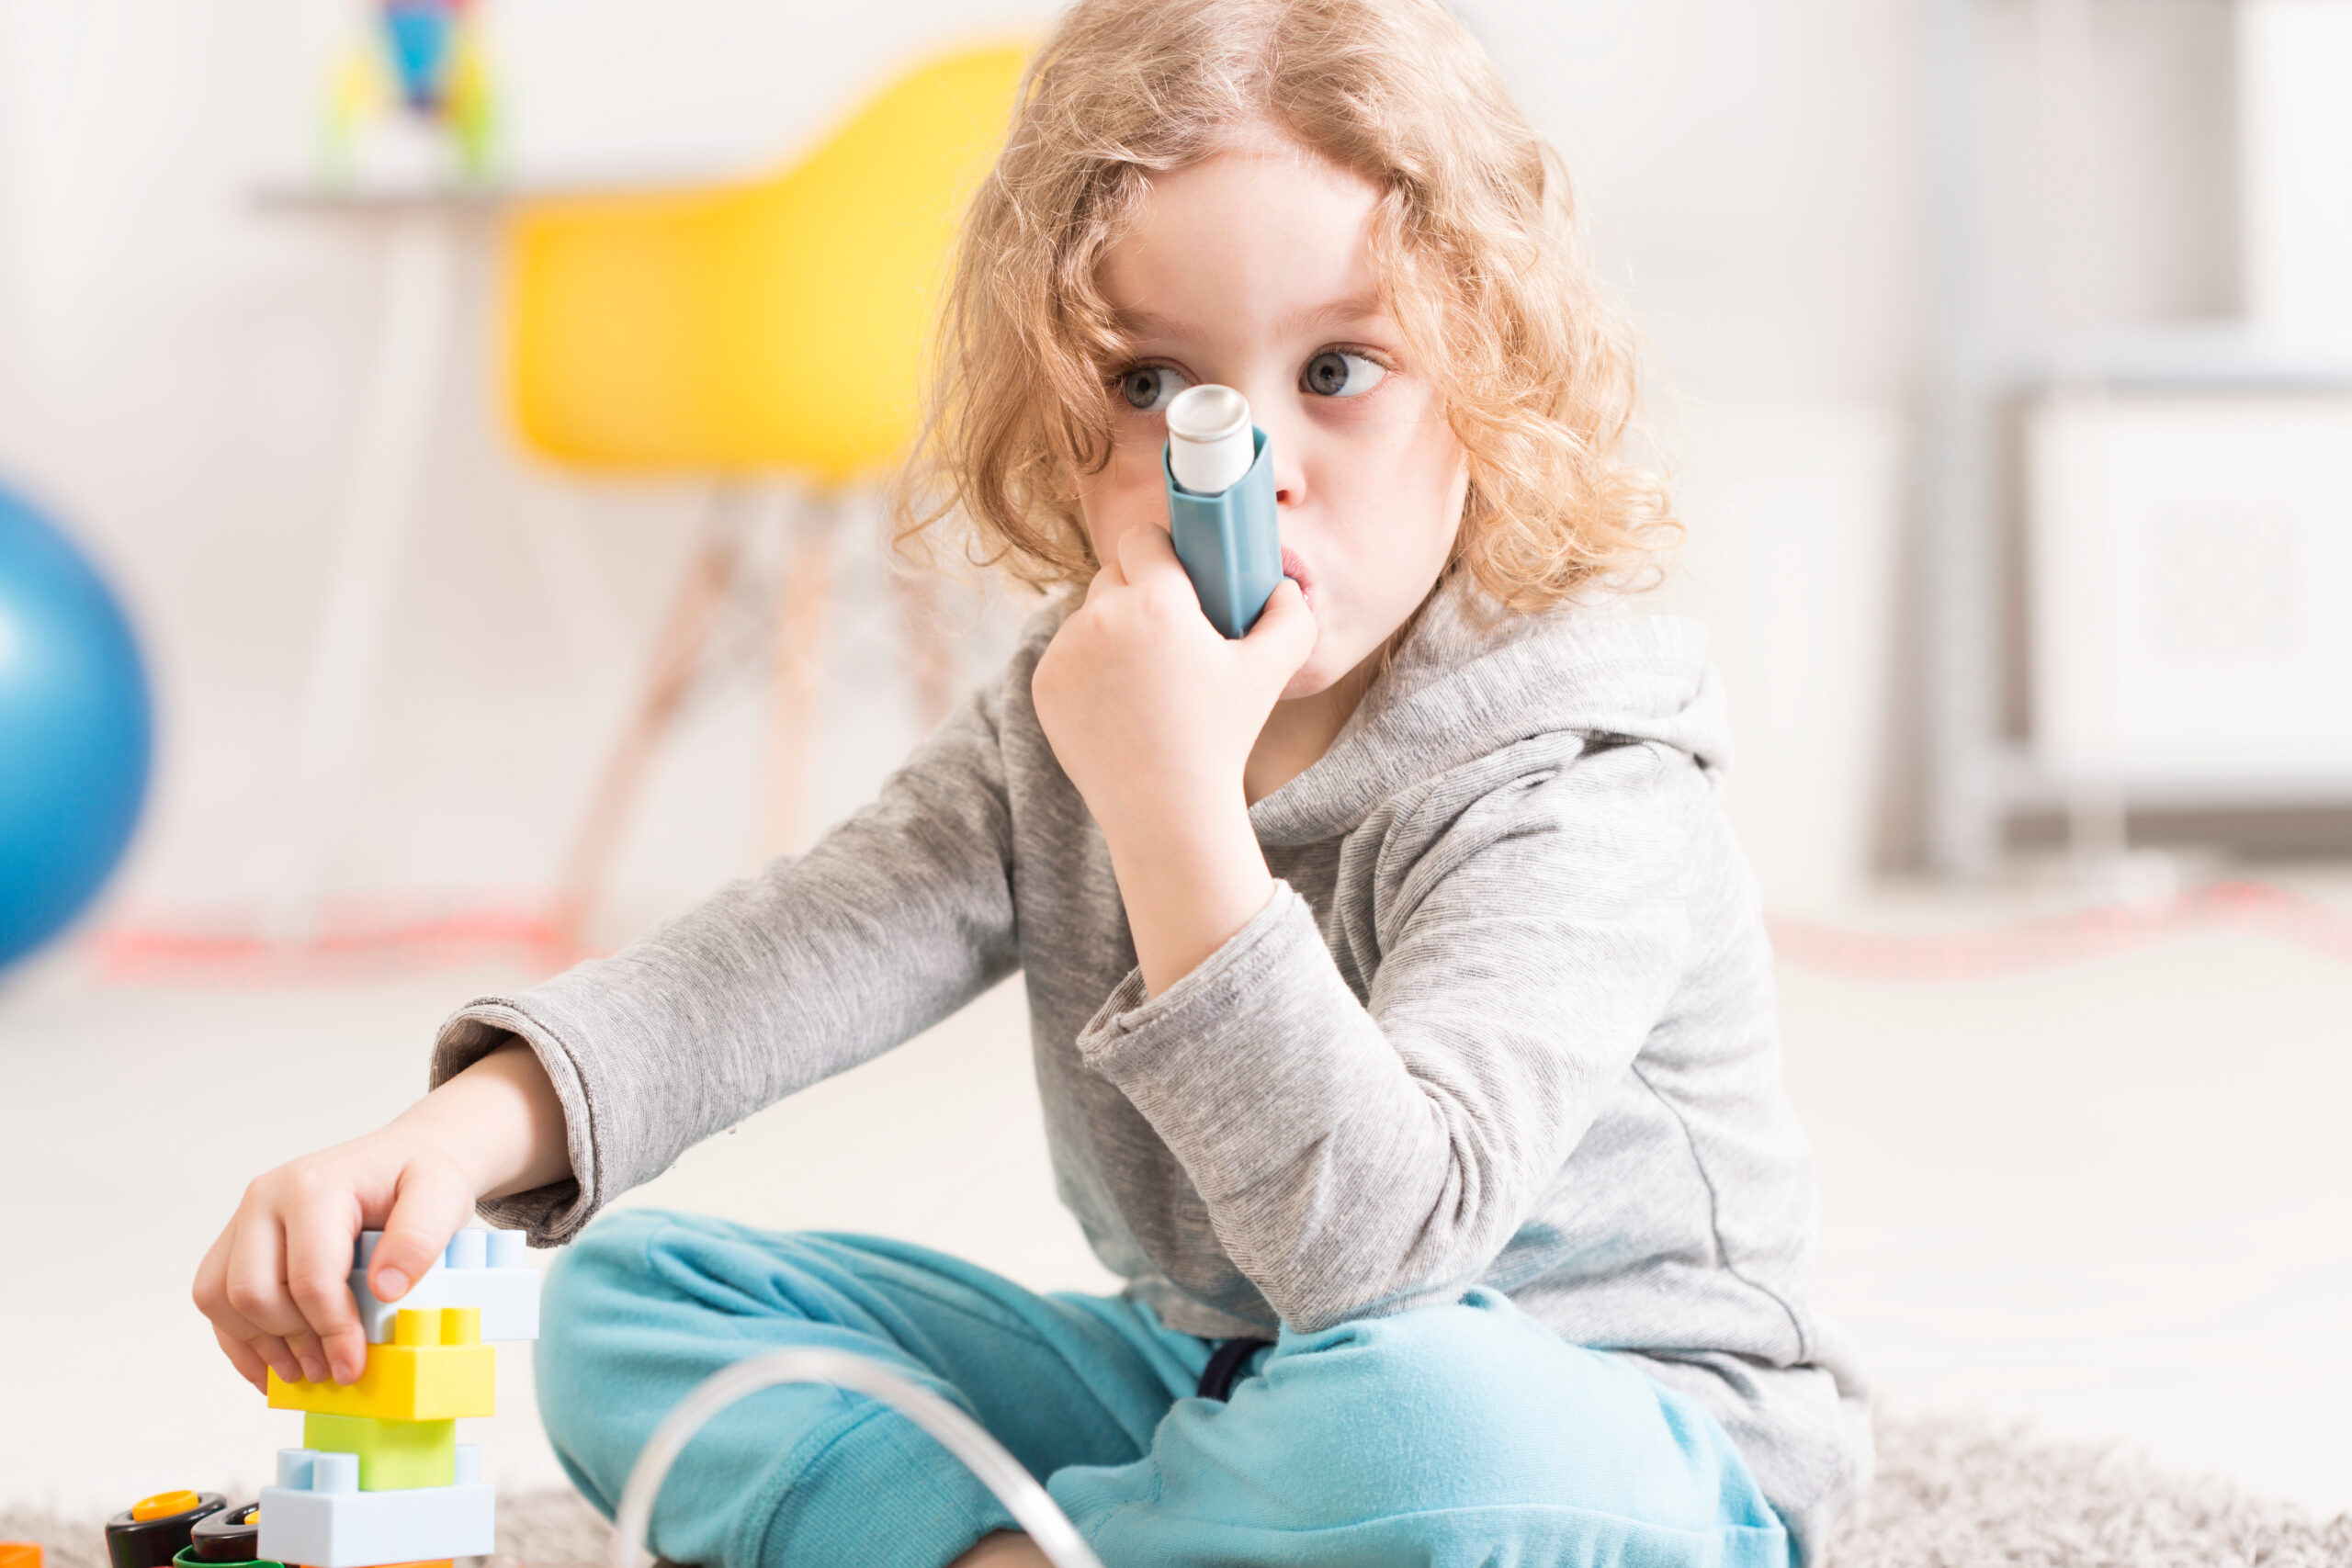 Schimmel begünstigt Asthma bei Kindern